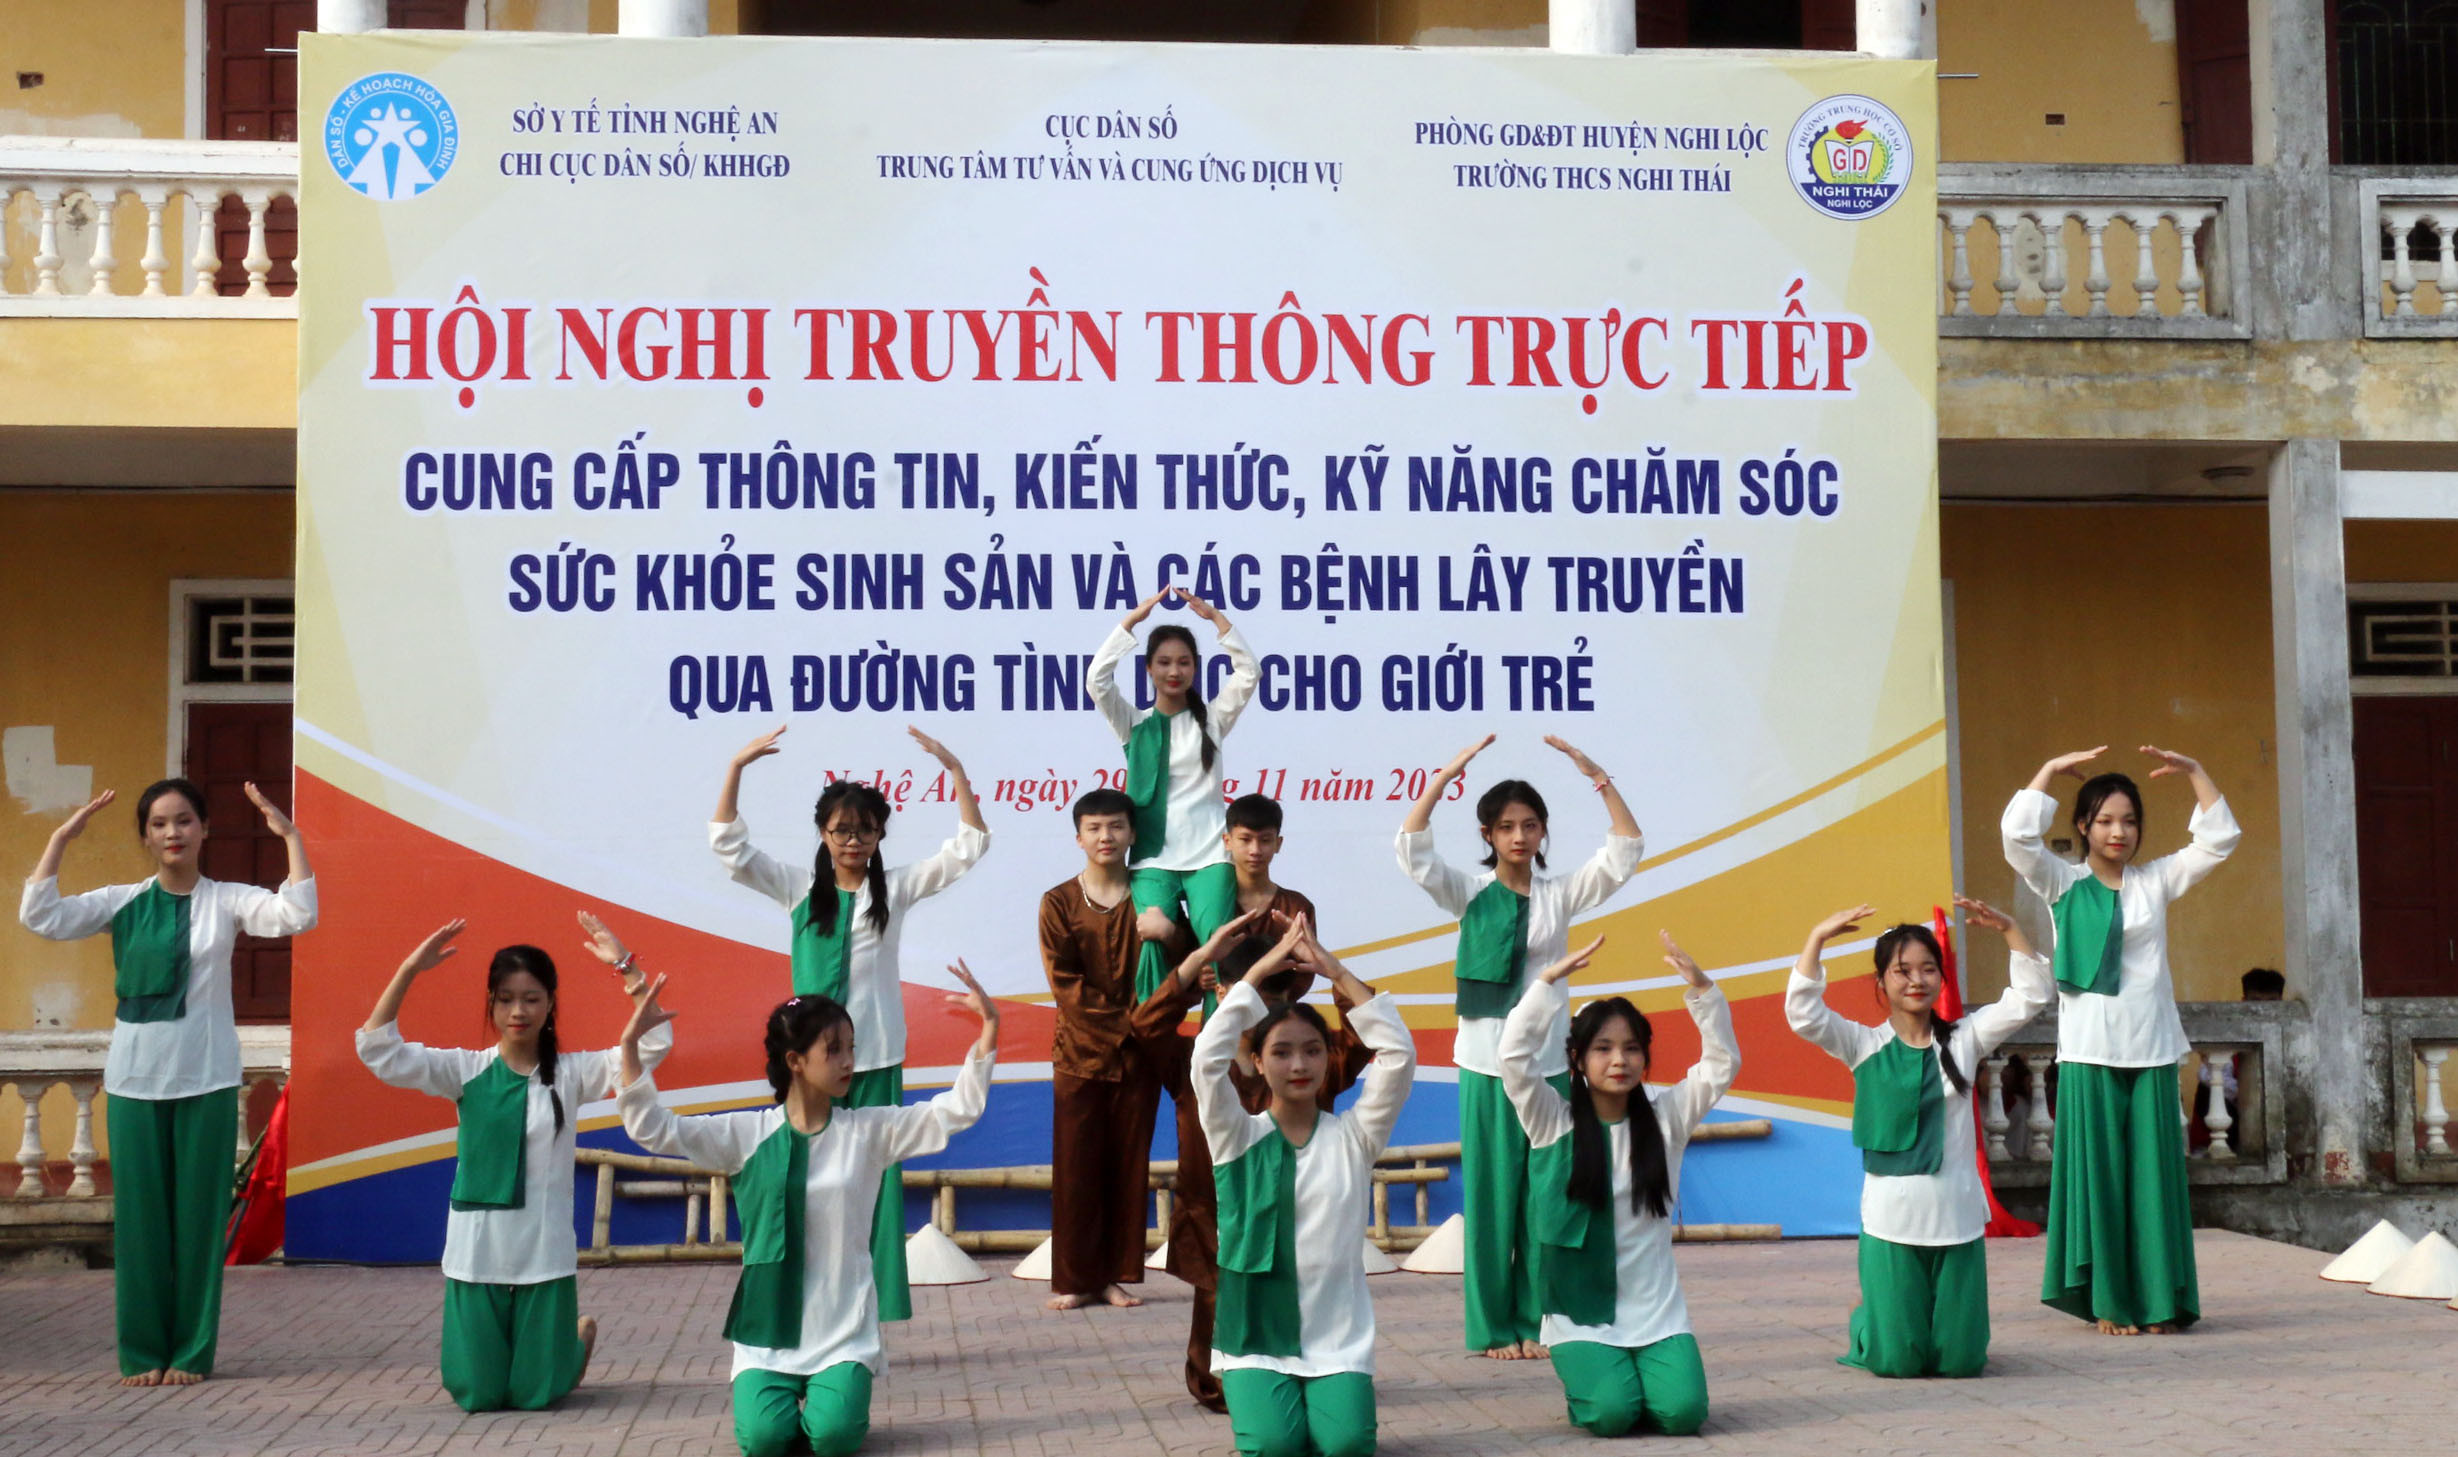 bna_Chương trình văn nghệ của học sinh Trường THCS Nghi Thái tại buổi truyền thông. Ảnh - Mỹ Hà.jpeg